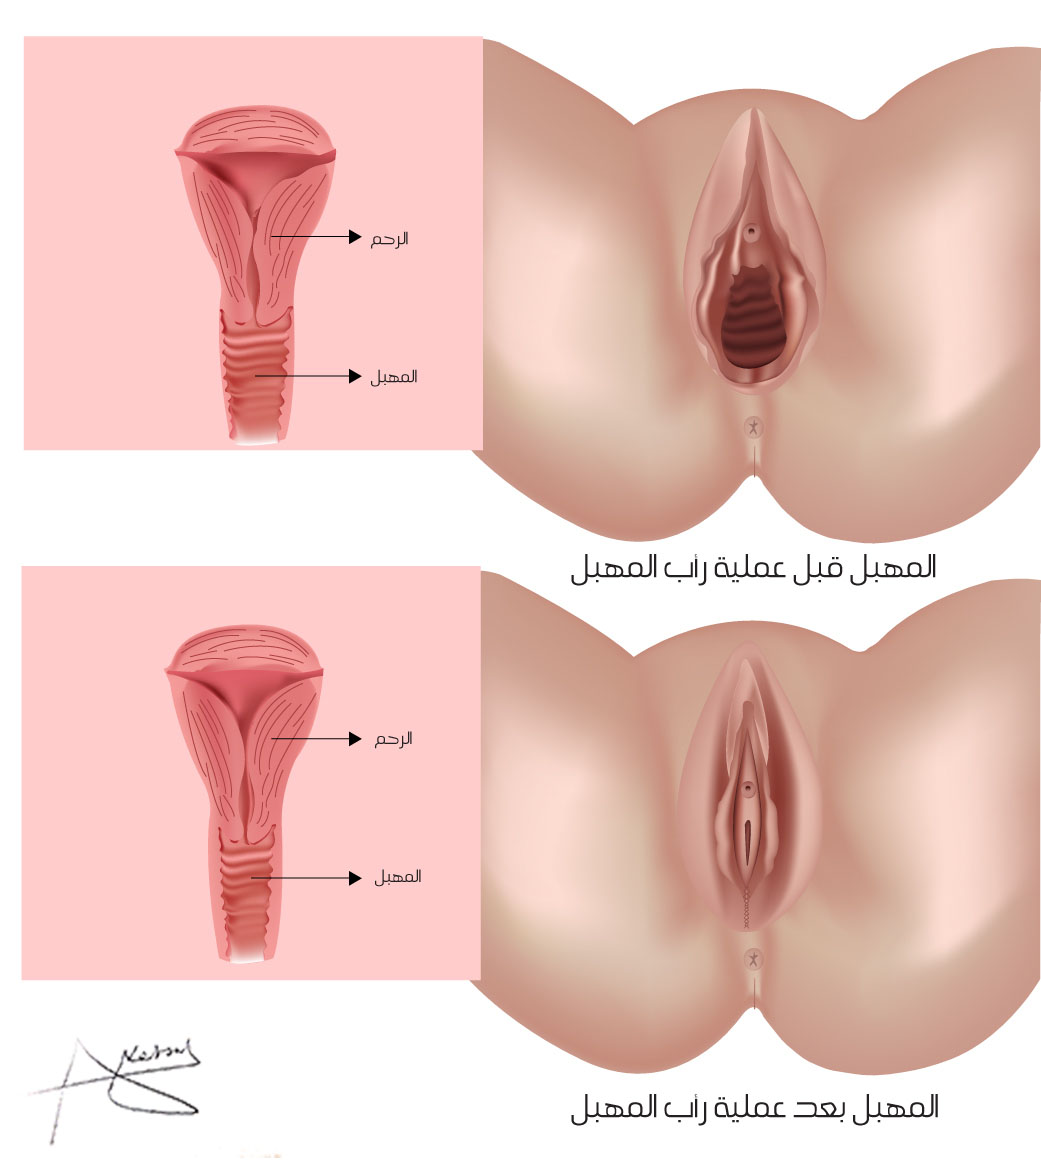 сокращается ли матка во время оргазма фото 12